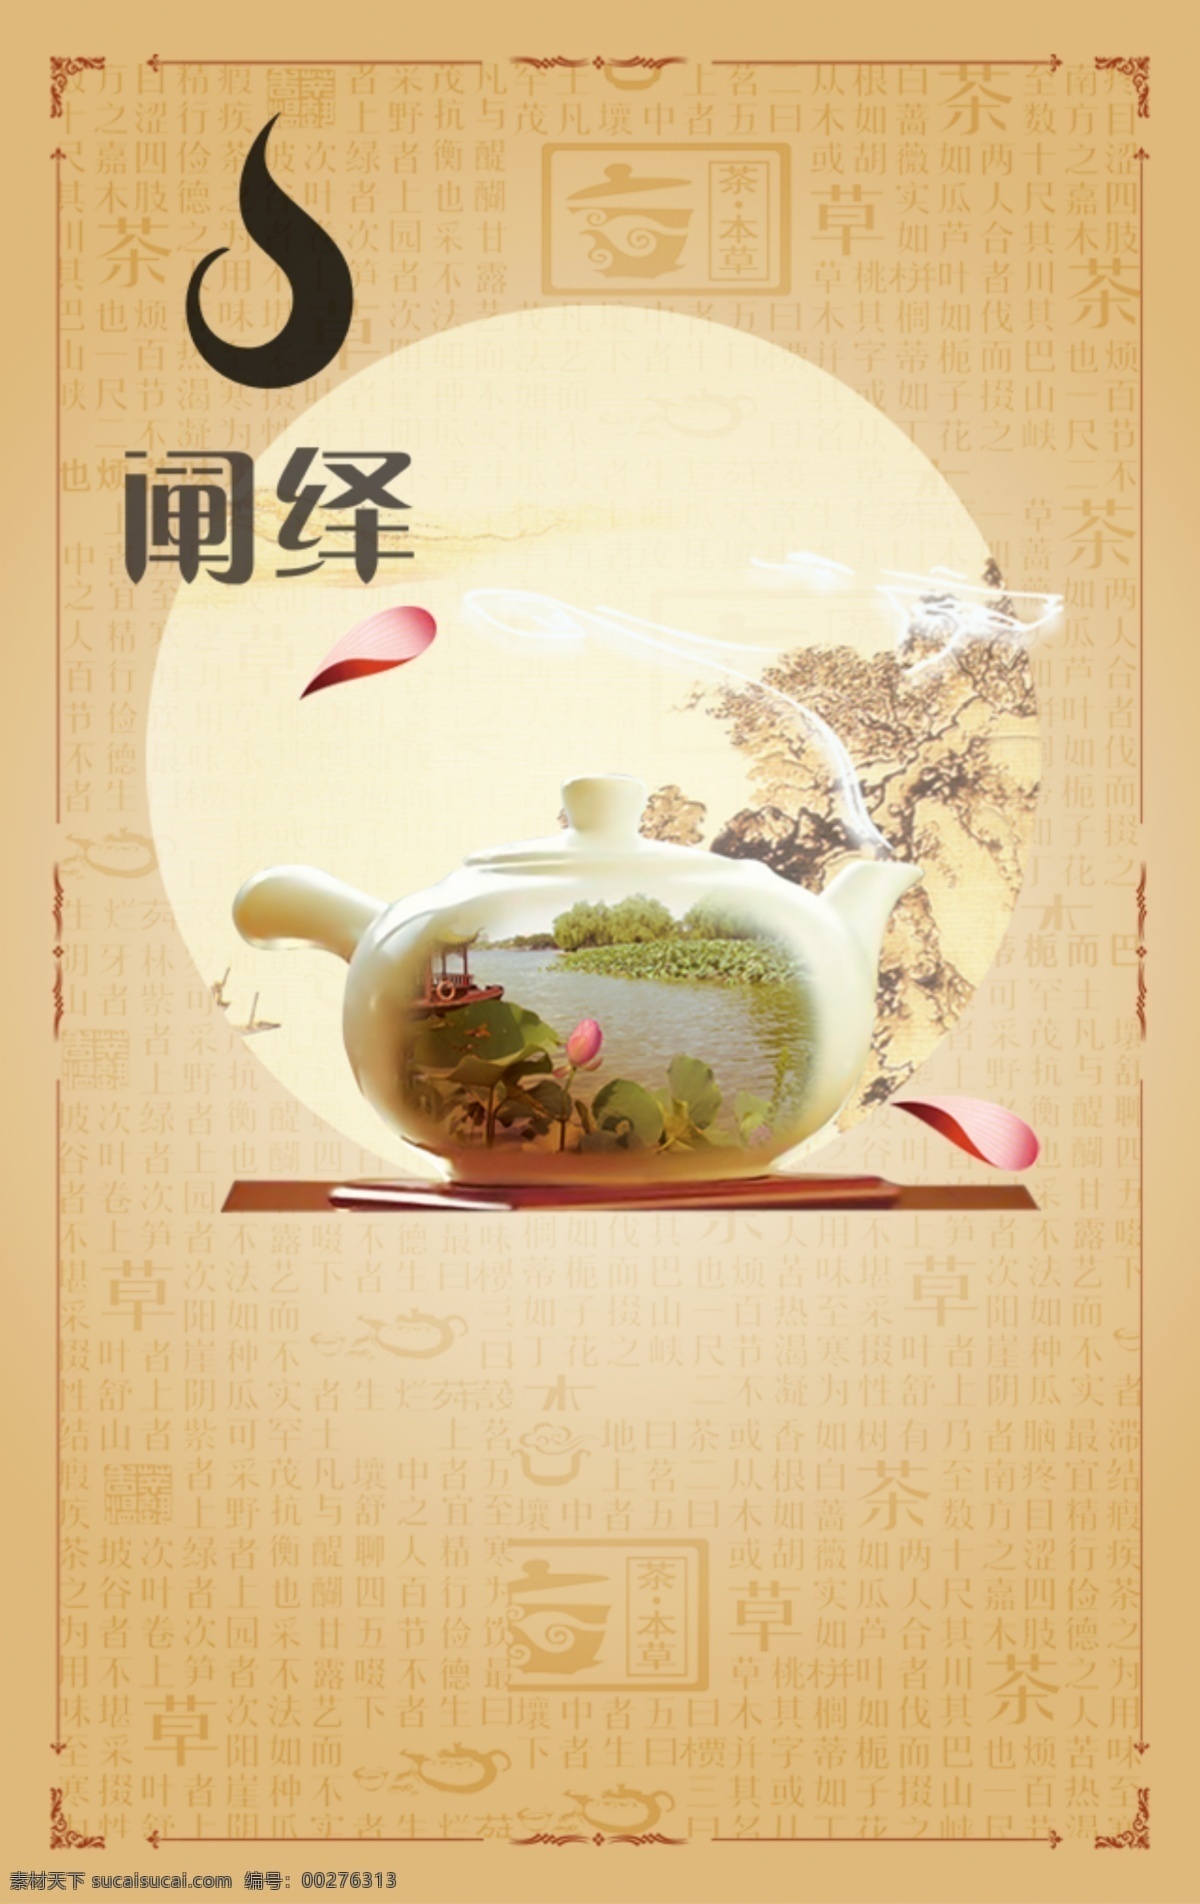 诗意 品茶 茶 茶壶 风景 原创设计 其他原创设计